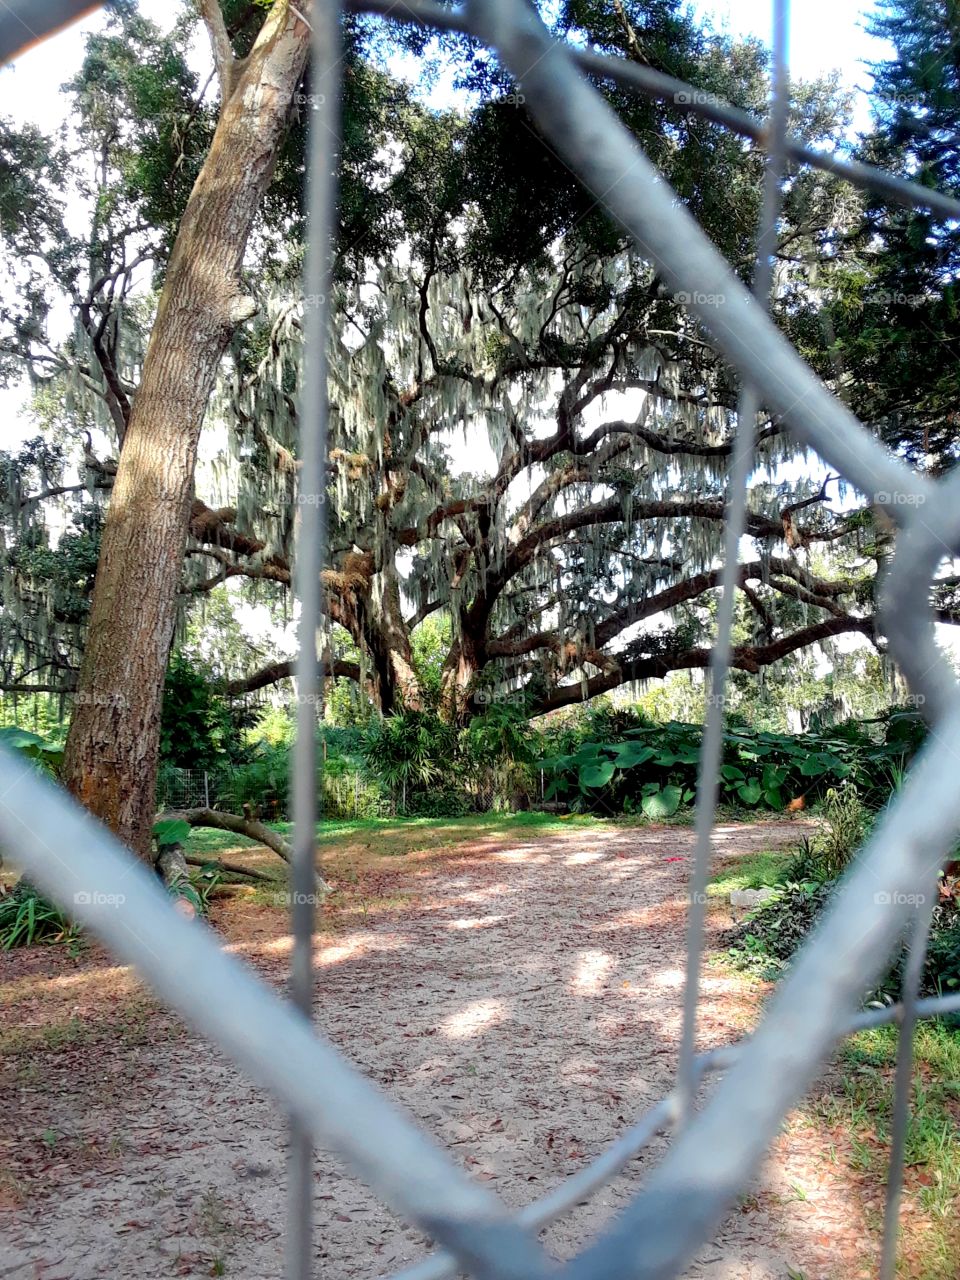 oak tree fenced in